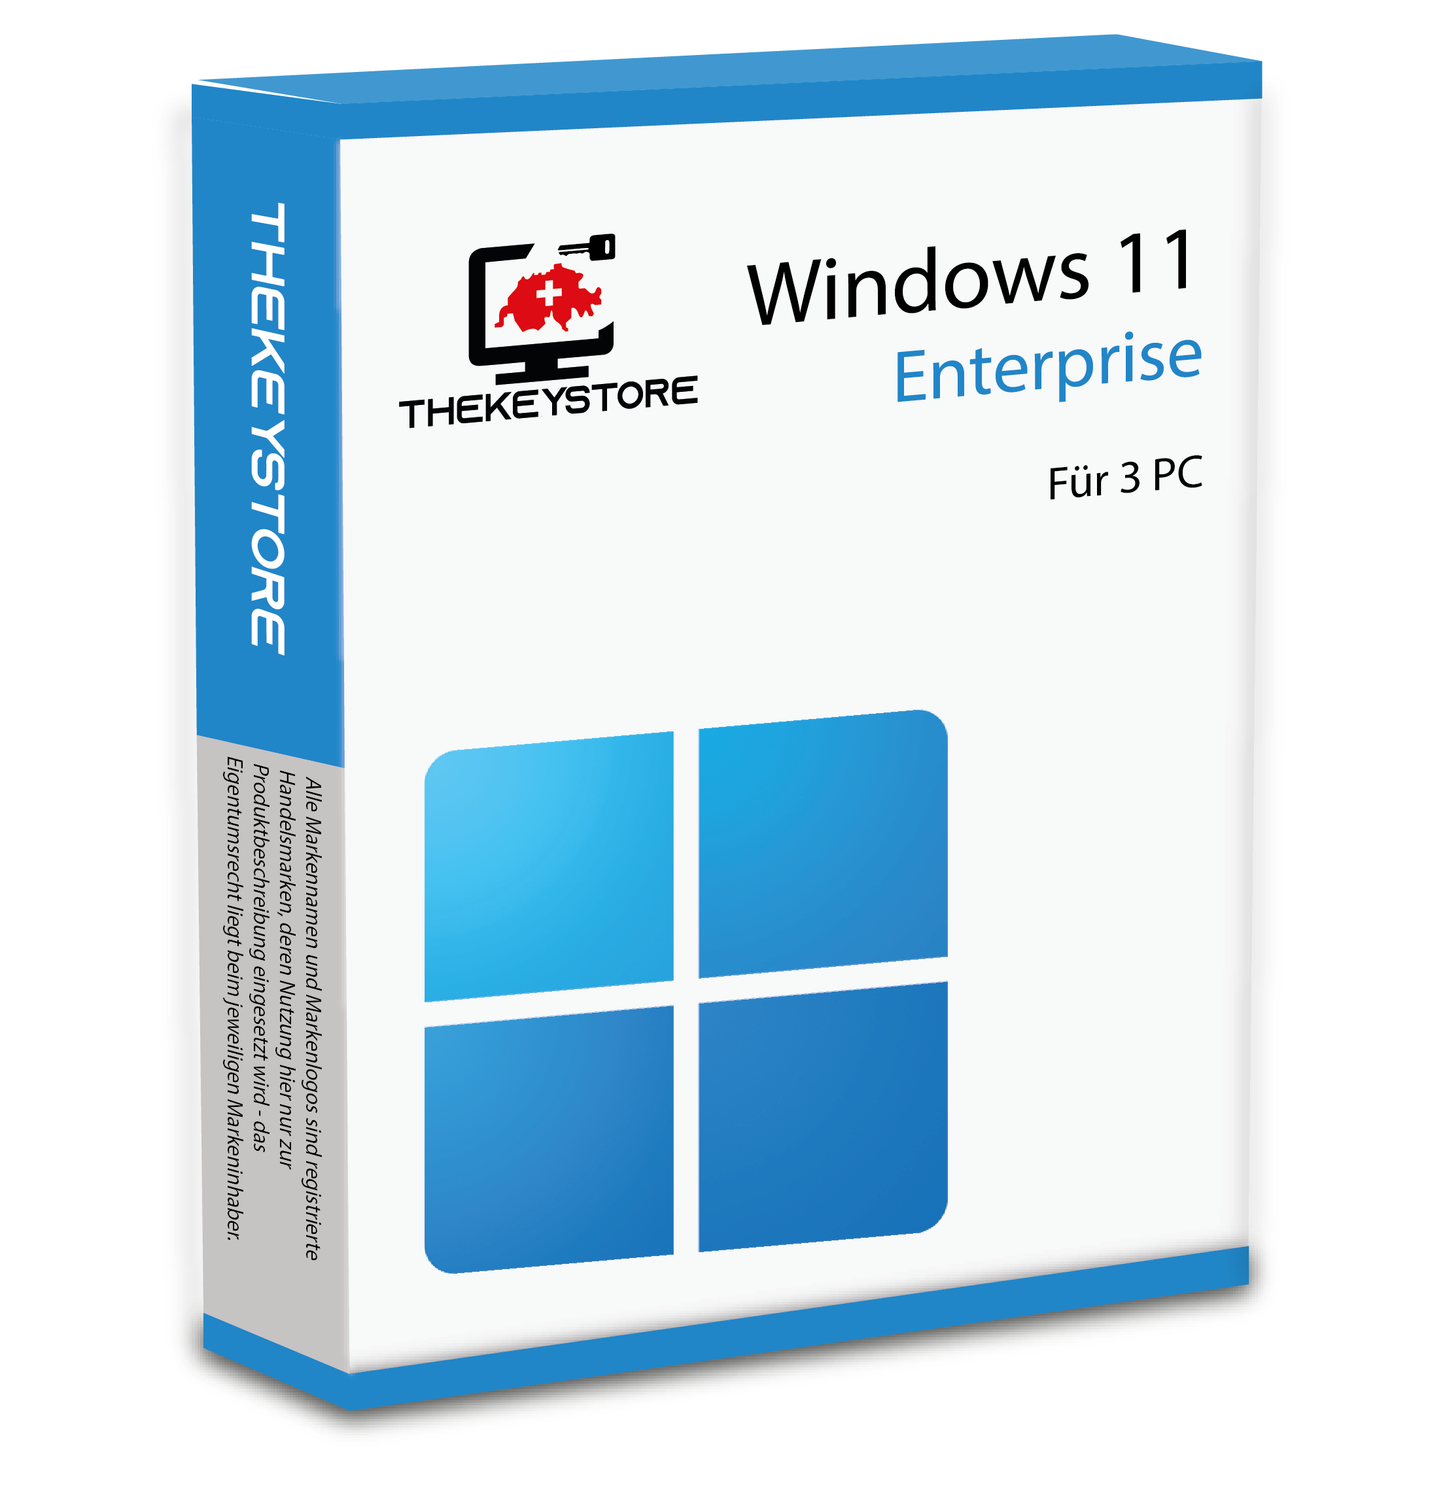 Microsoft Windows 11 Enterprise - Für 3 PC - TheKeyStore Schweiz